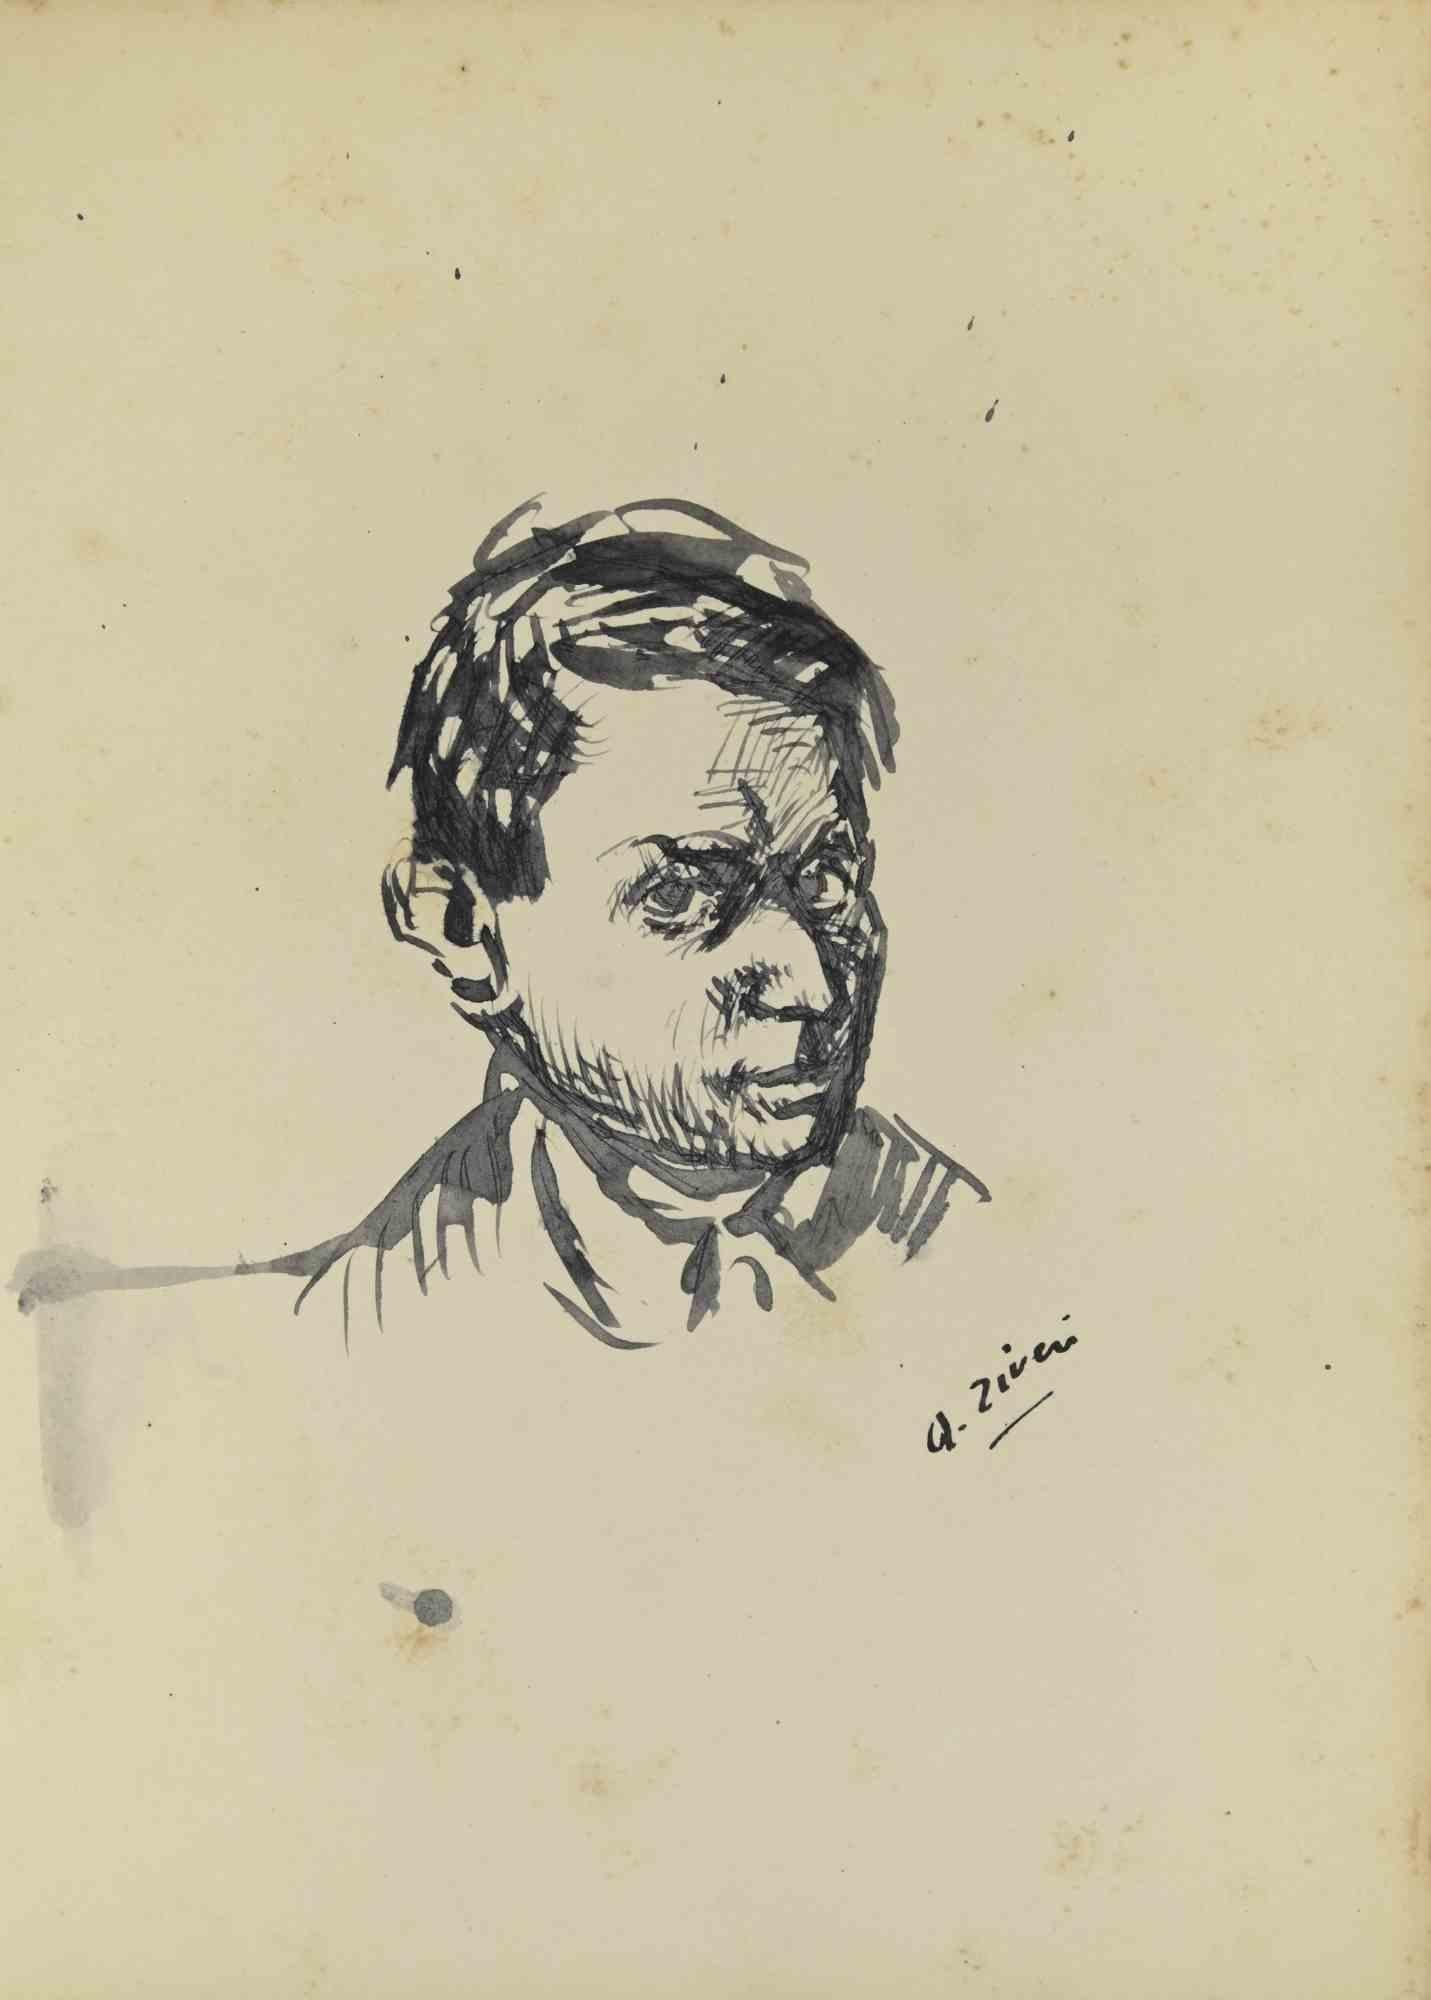 Das Porträt ist eine Originalzeichnung von Alberto Ziveri aus den 1930er Jahren.

Tinte auf Papier.

Handsigniert.

In gutem Zustand.

Das Kunstwerk wird durch geschickte Striche meisterhaft dargestellt.

Alberto Ziveri (Rom, 1908 - 1990), der